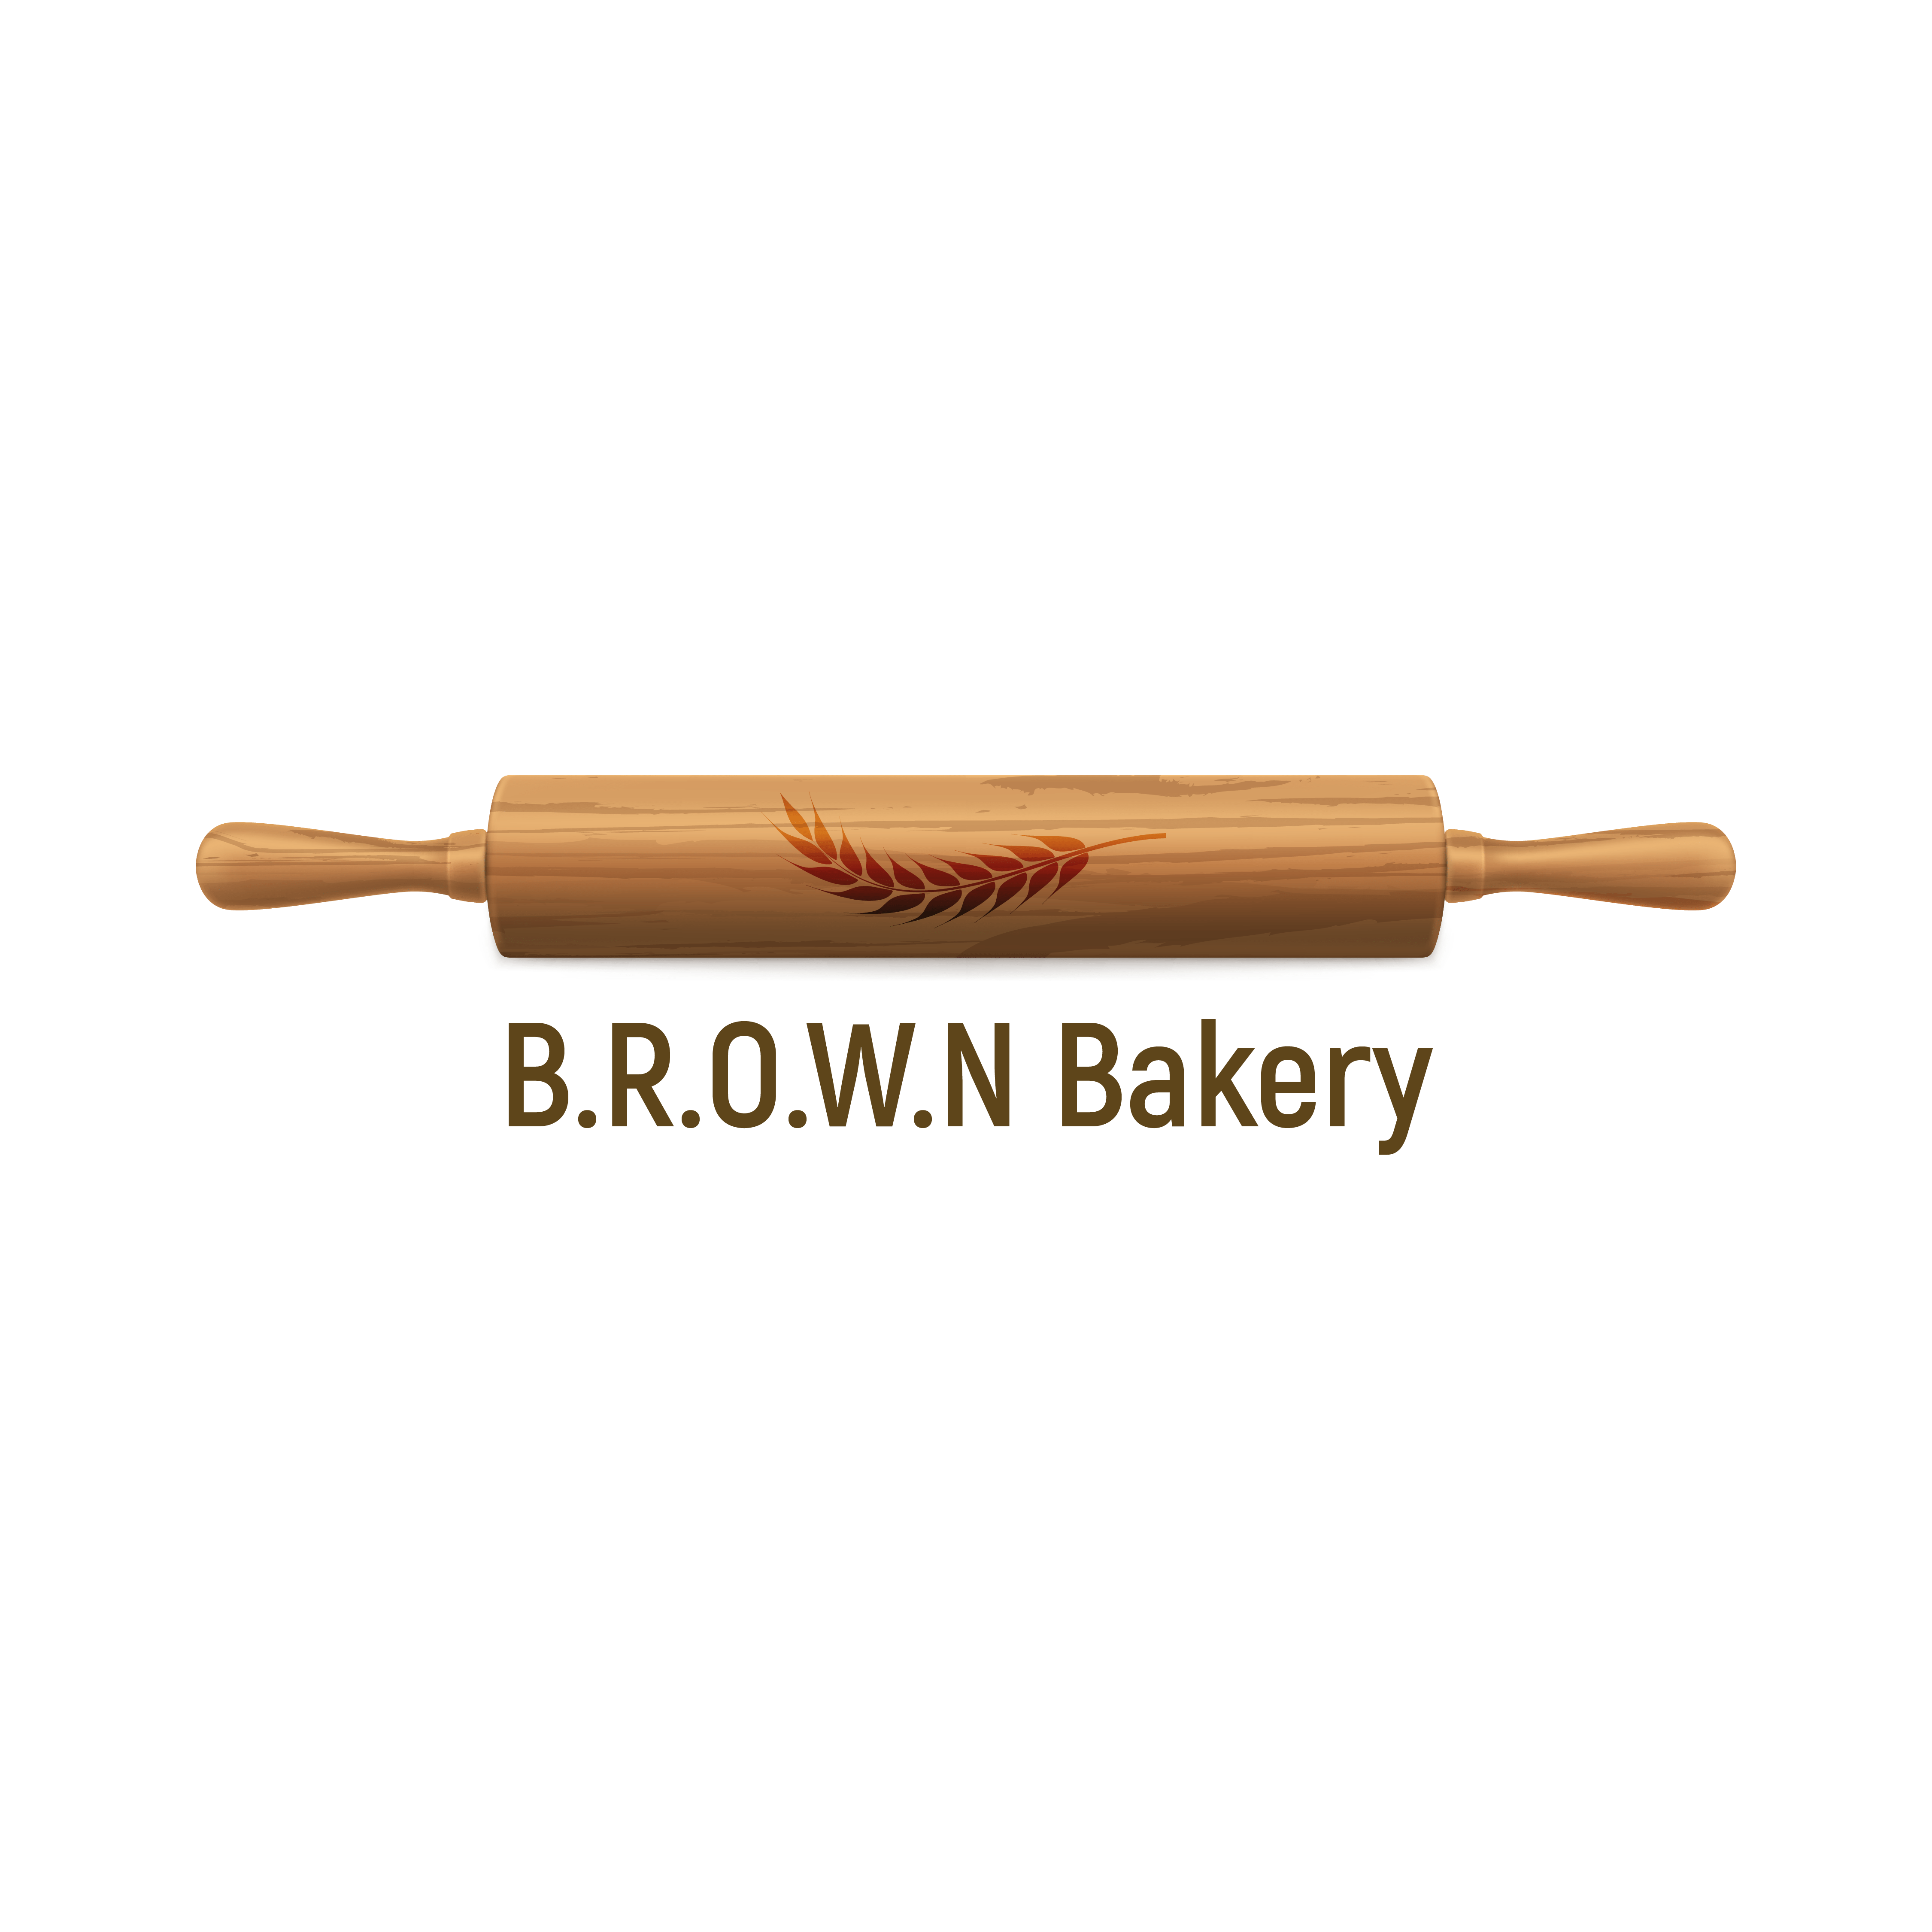 B.R.O.W.N Bakery